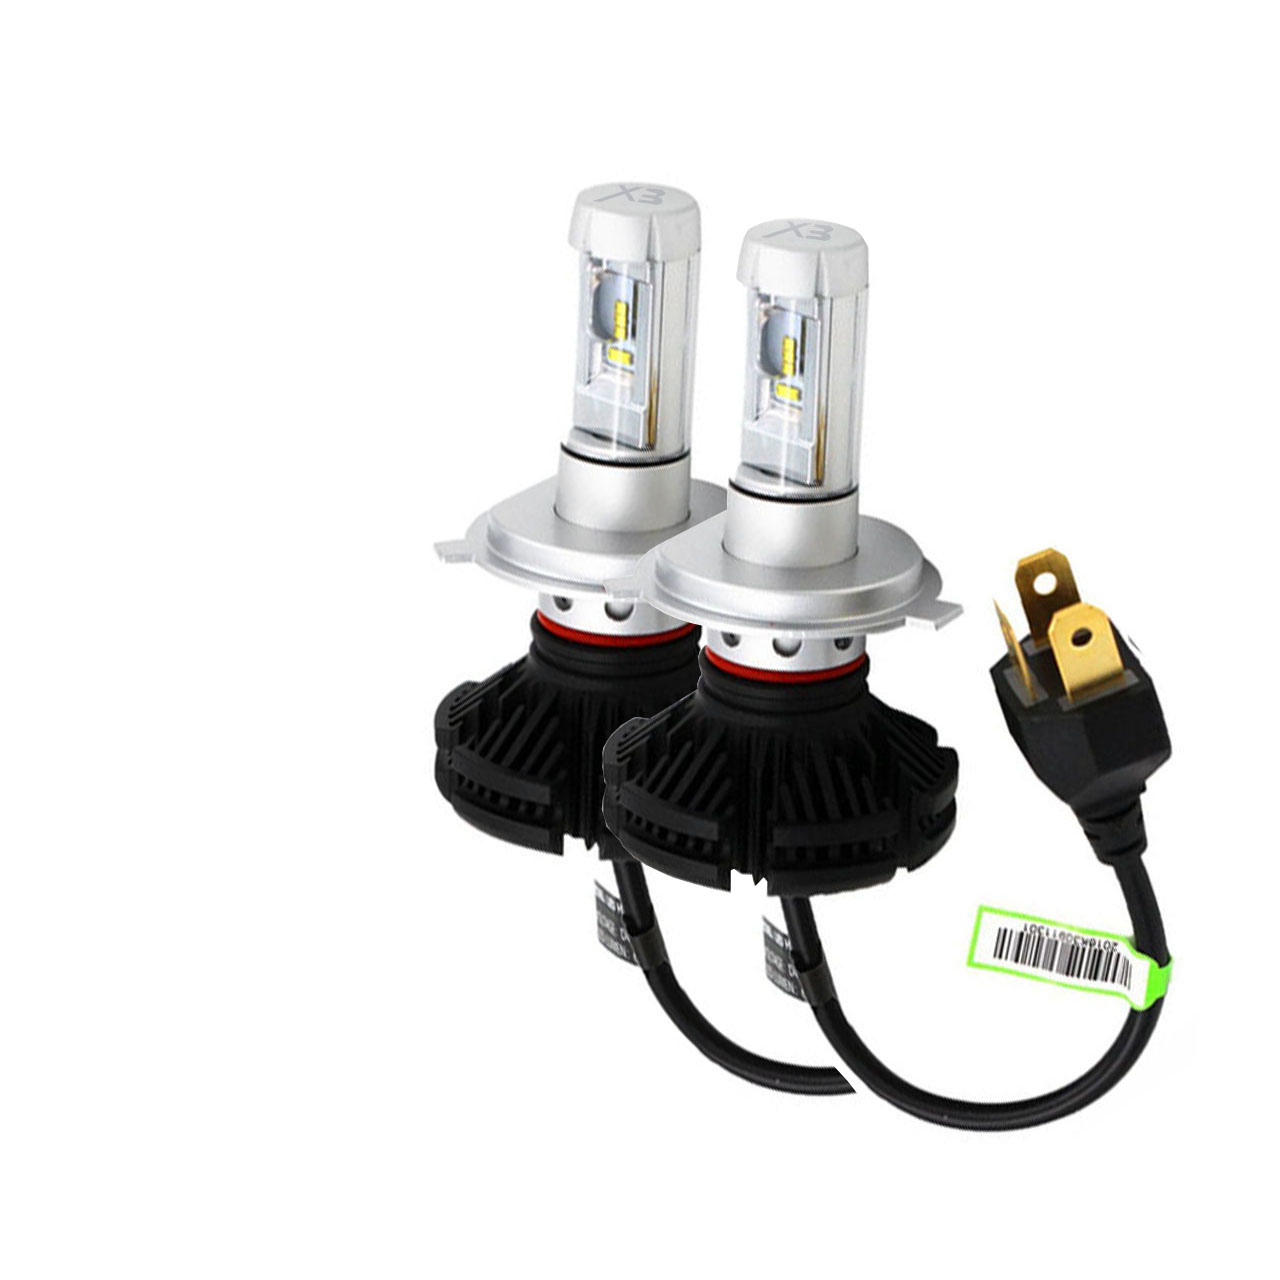 لامپ خودرو ایکس 3 مدل H4 بسته دو عددی